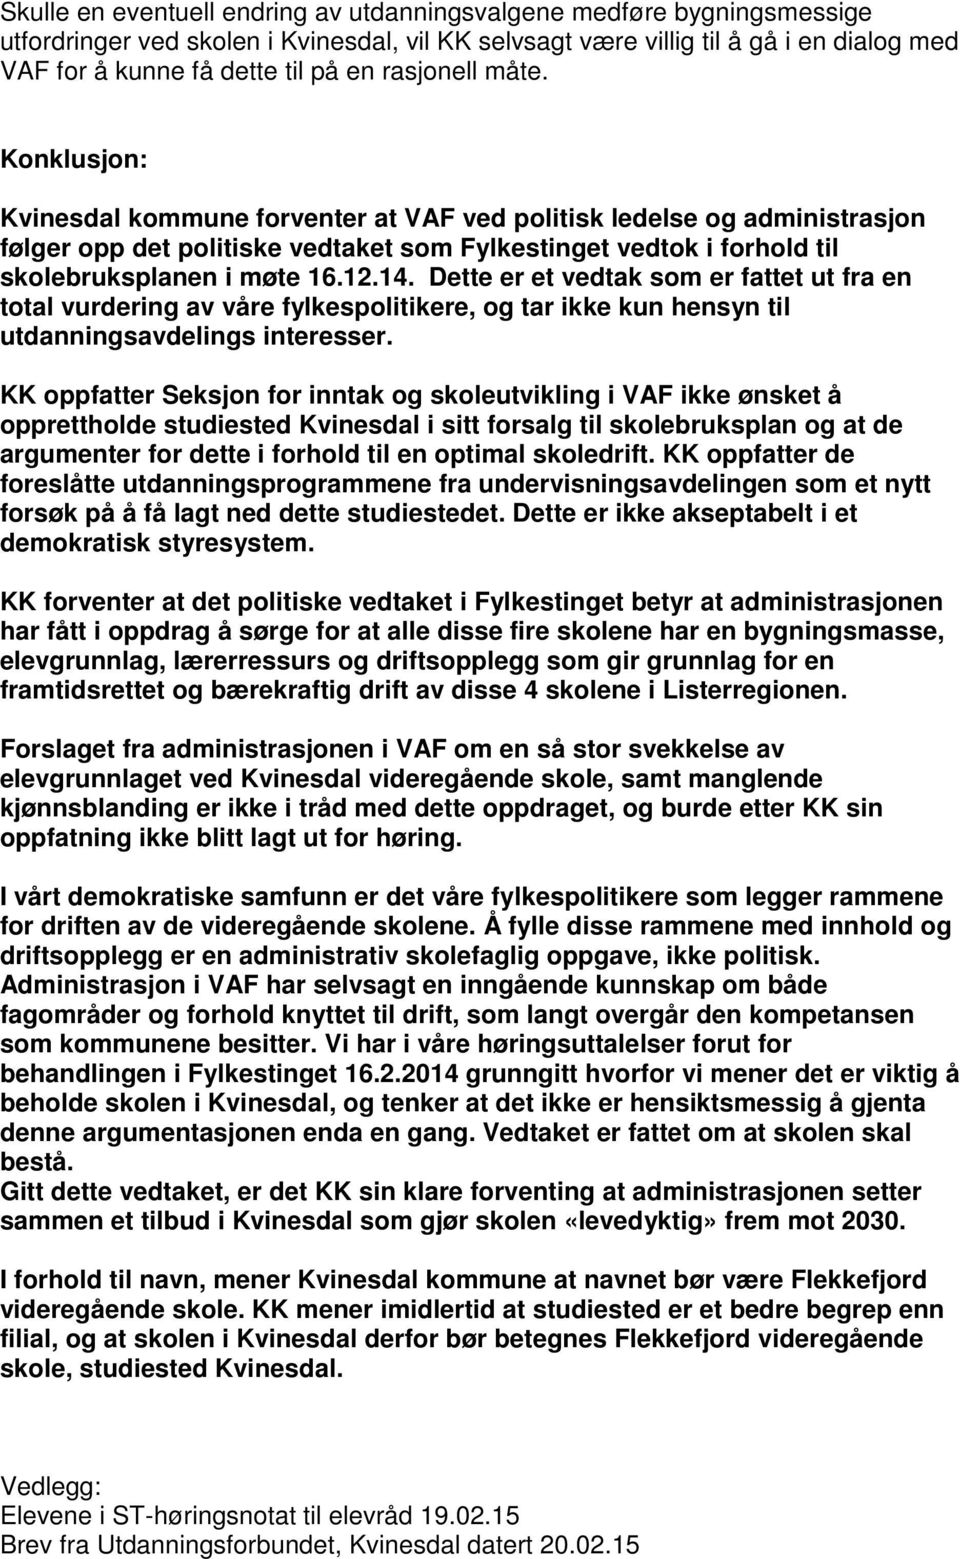 Konklusjon: Kvinesdal kommune forventer at VAF ved politisk ledelse og administrasjon følger opp det politiske vedtaket som Fylkestinget vedtok i forhold til skolebruksplanen i møte 16.12.14.